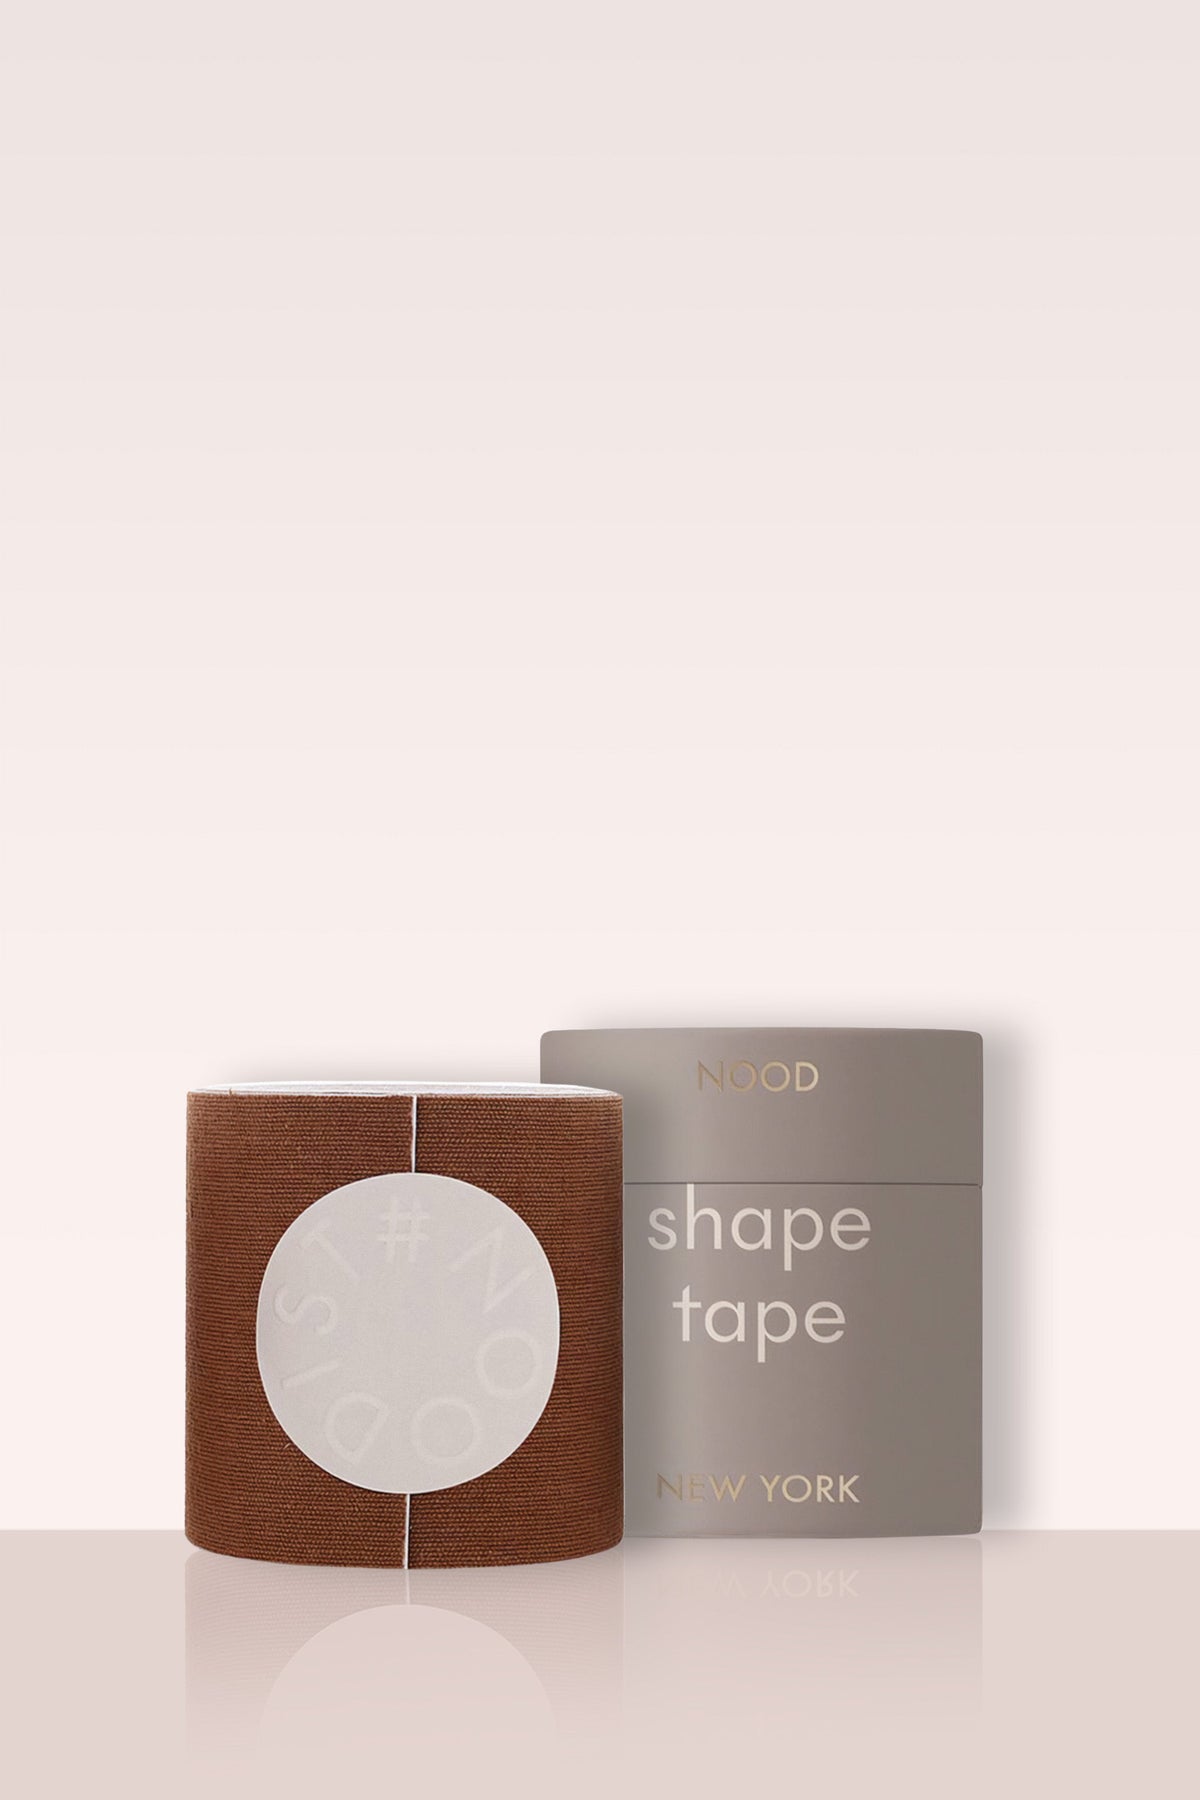 NOOD Shape Tape Breast Tape (3 inch wide, 16 ft Roll)- Nood Shade 7 -  Breakout Bras